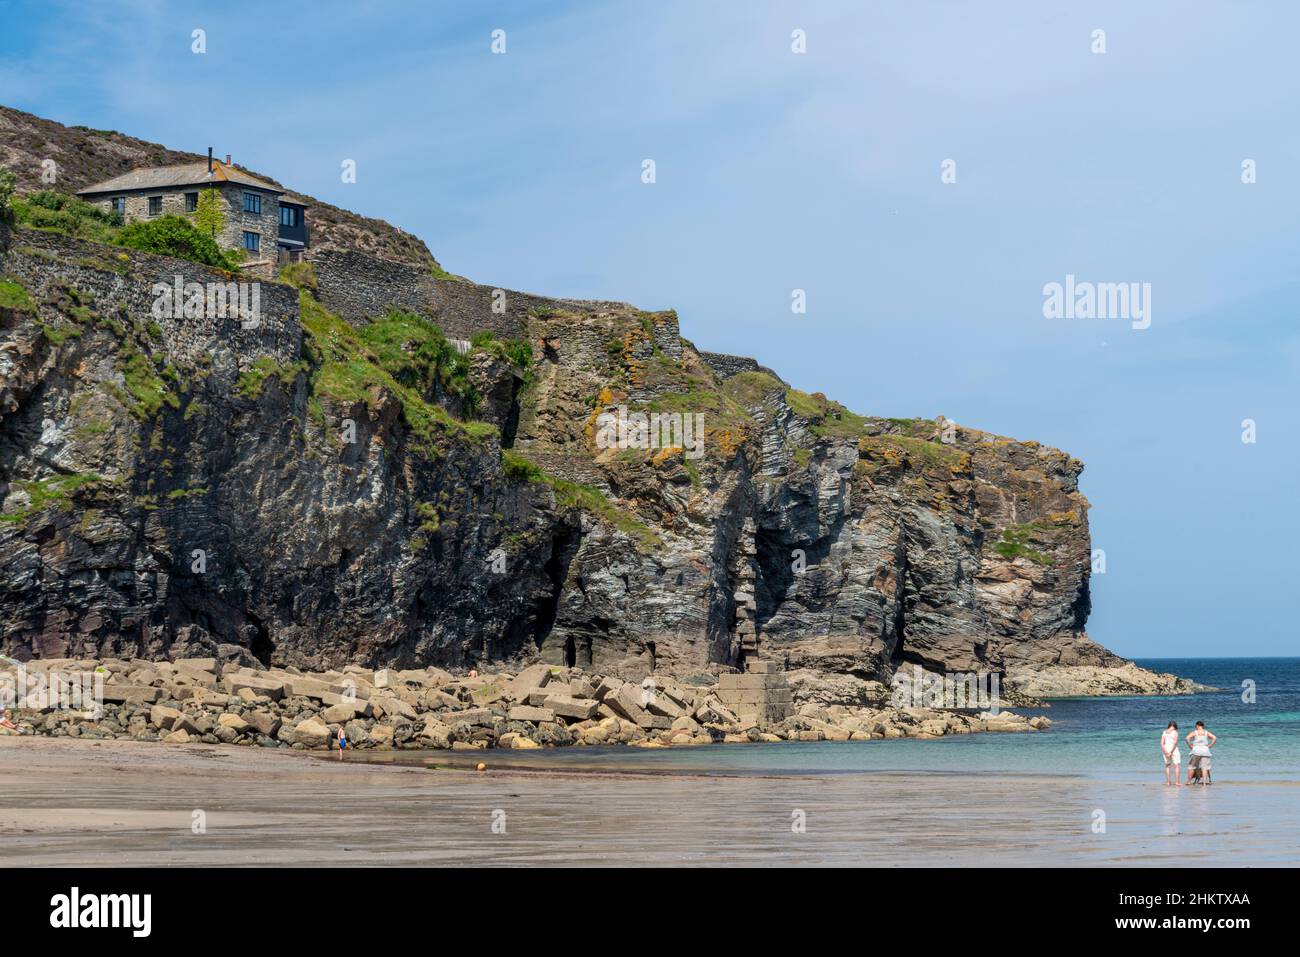 St.Agnes,Cornovaglia,Inghilterra,UK-Luglio 22 2021:visitatori al popolare punto turistico costiero sulla costa nord, godere del mare caldo e fine tempo estivo, benea Foto Stock